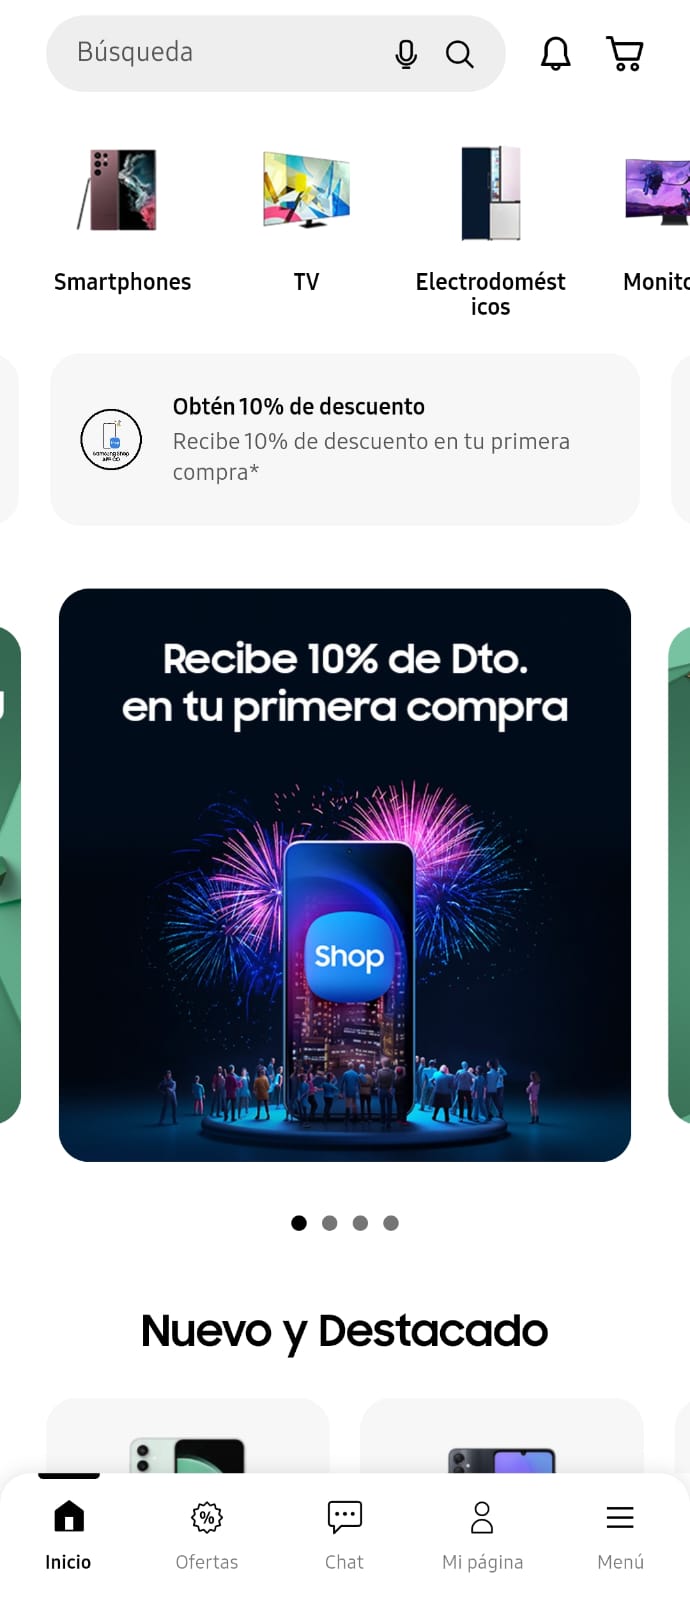 SAMSUNG SHOP APP ya está disponible en Colombia